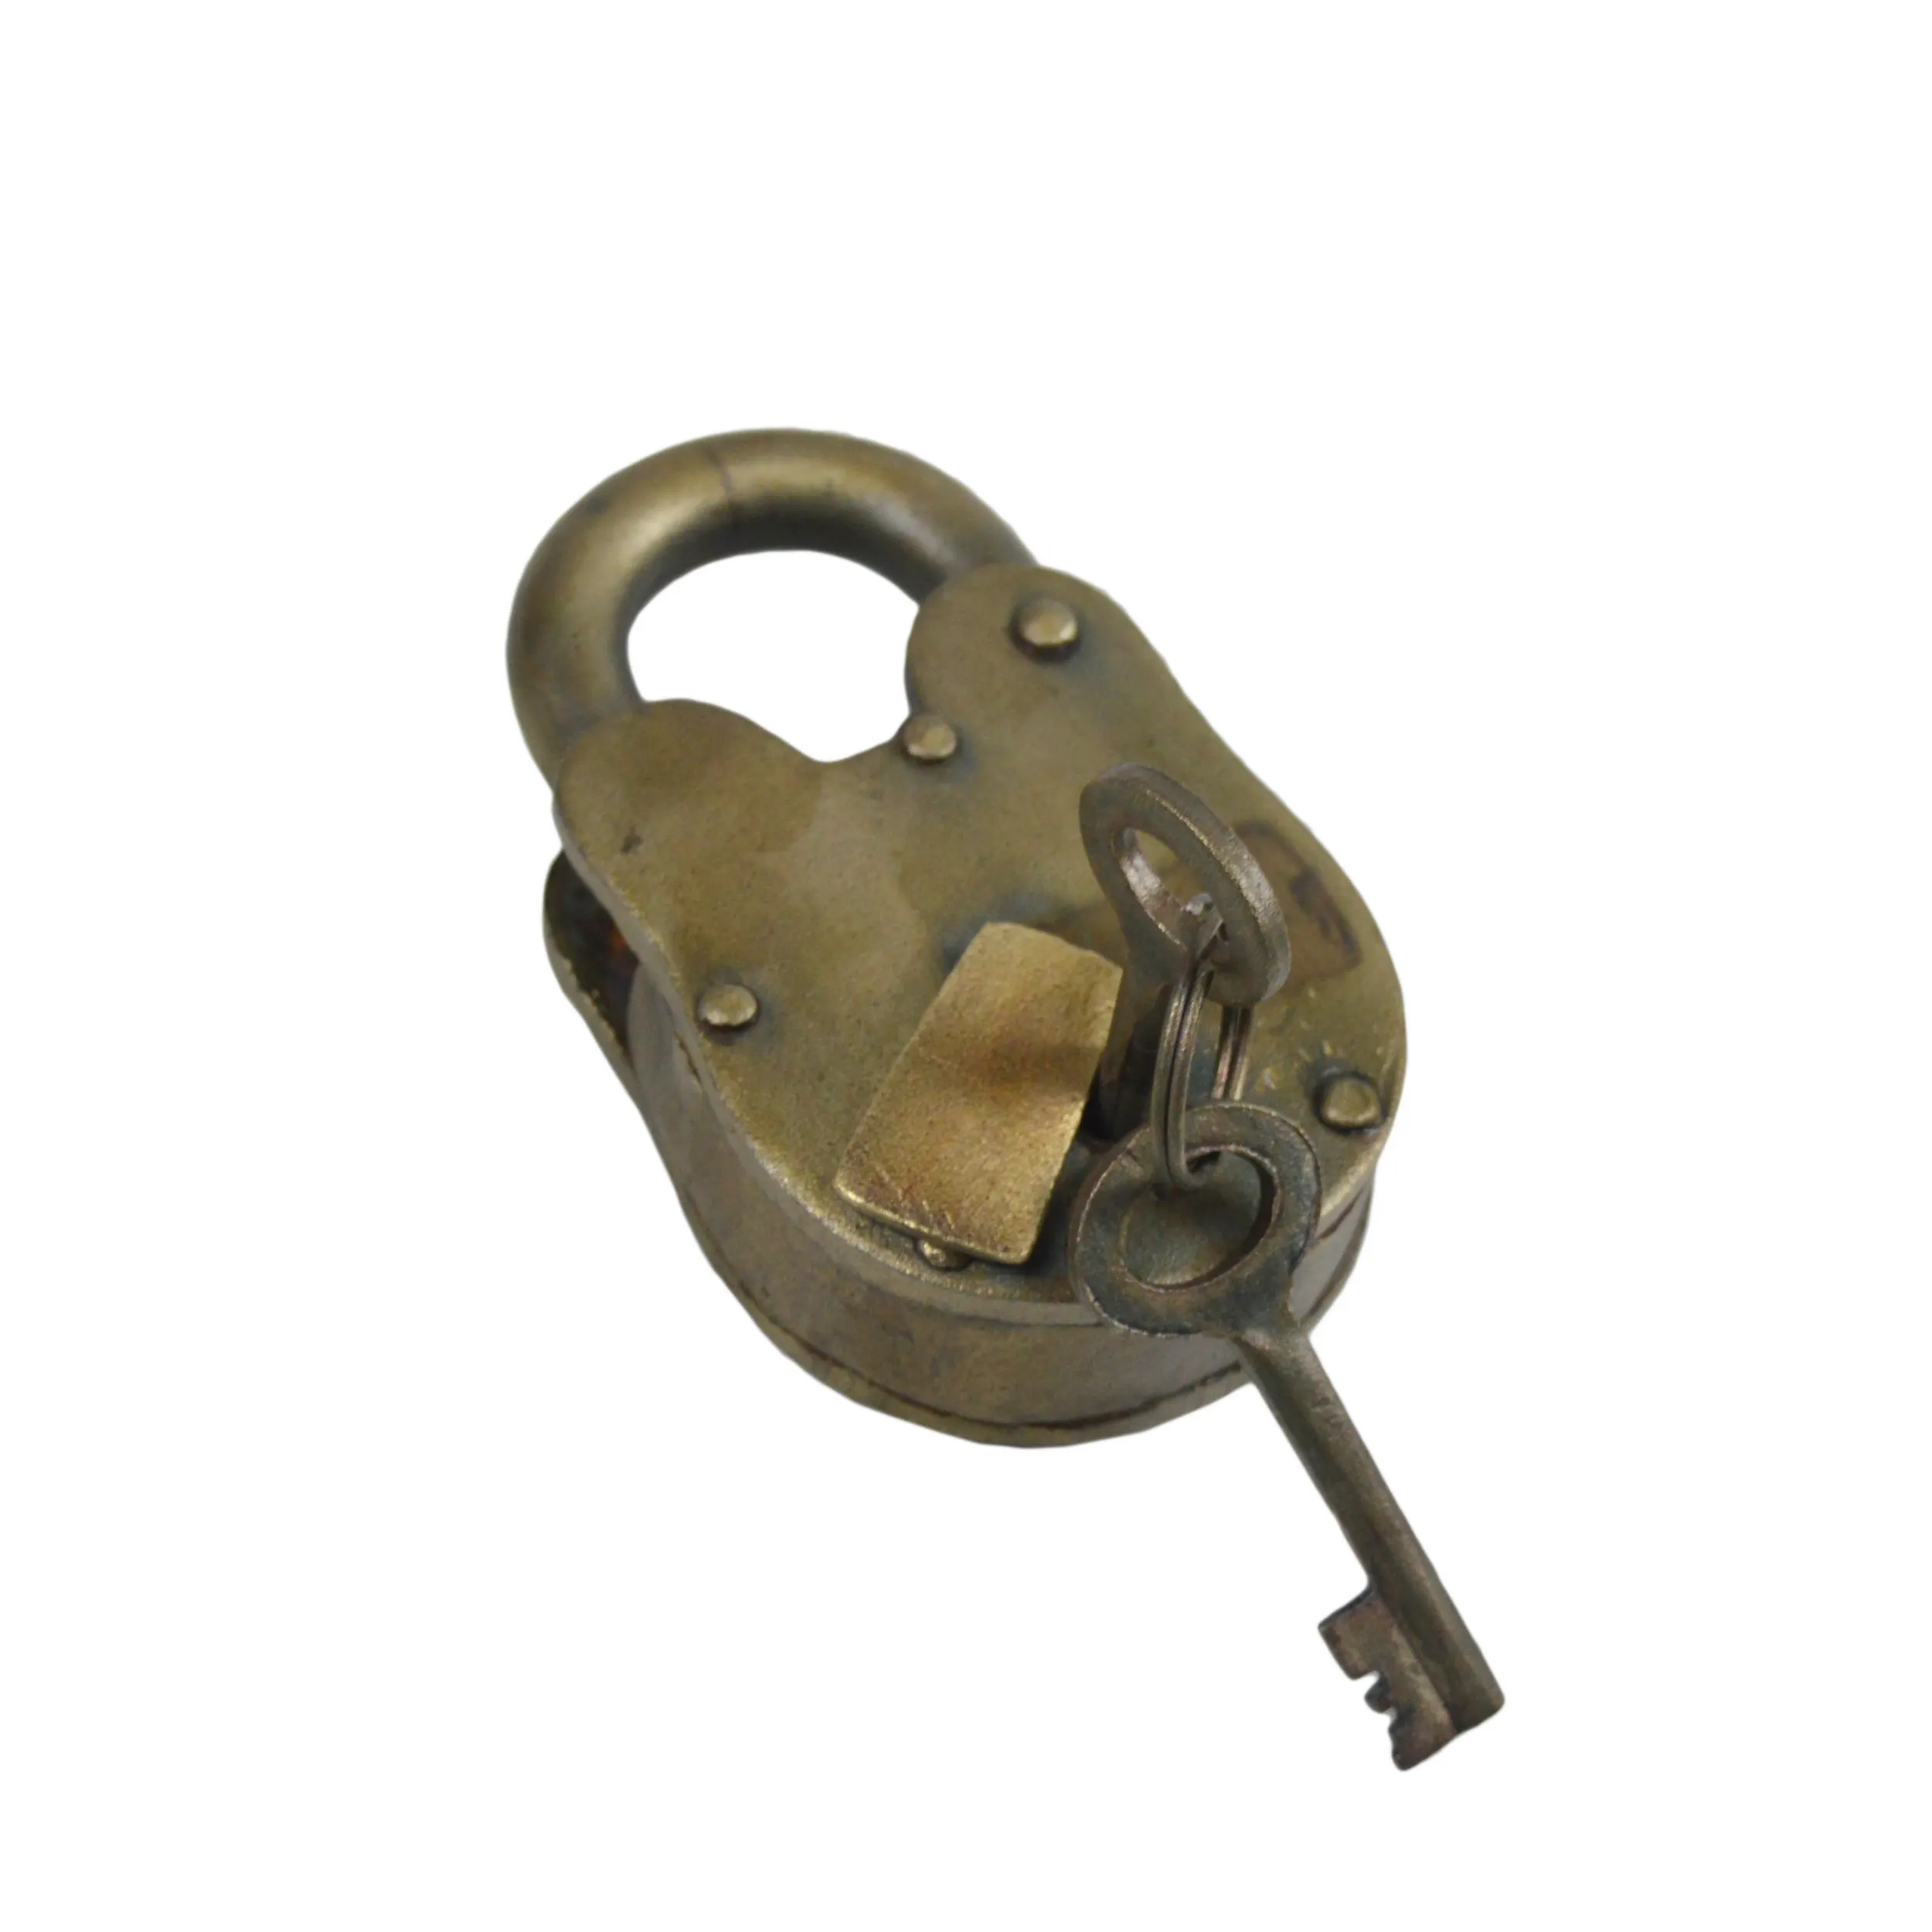 Candado de hierro y llaves, cerradura de estilo Vintage con 2 llaves, lo más vendido, de la mejor calidad